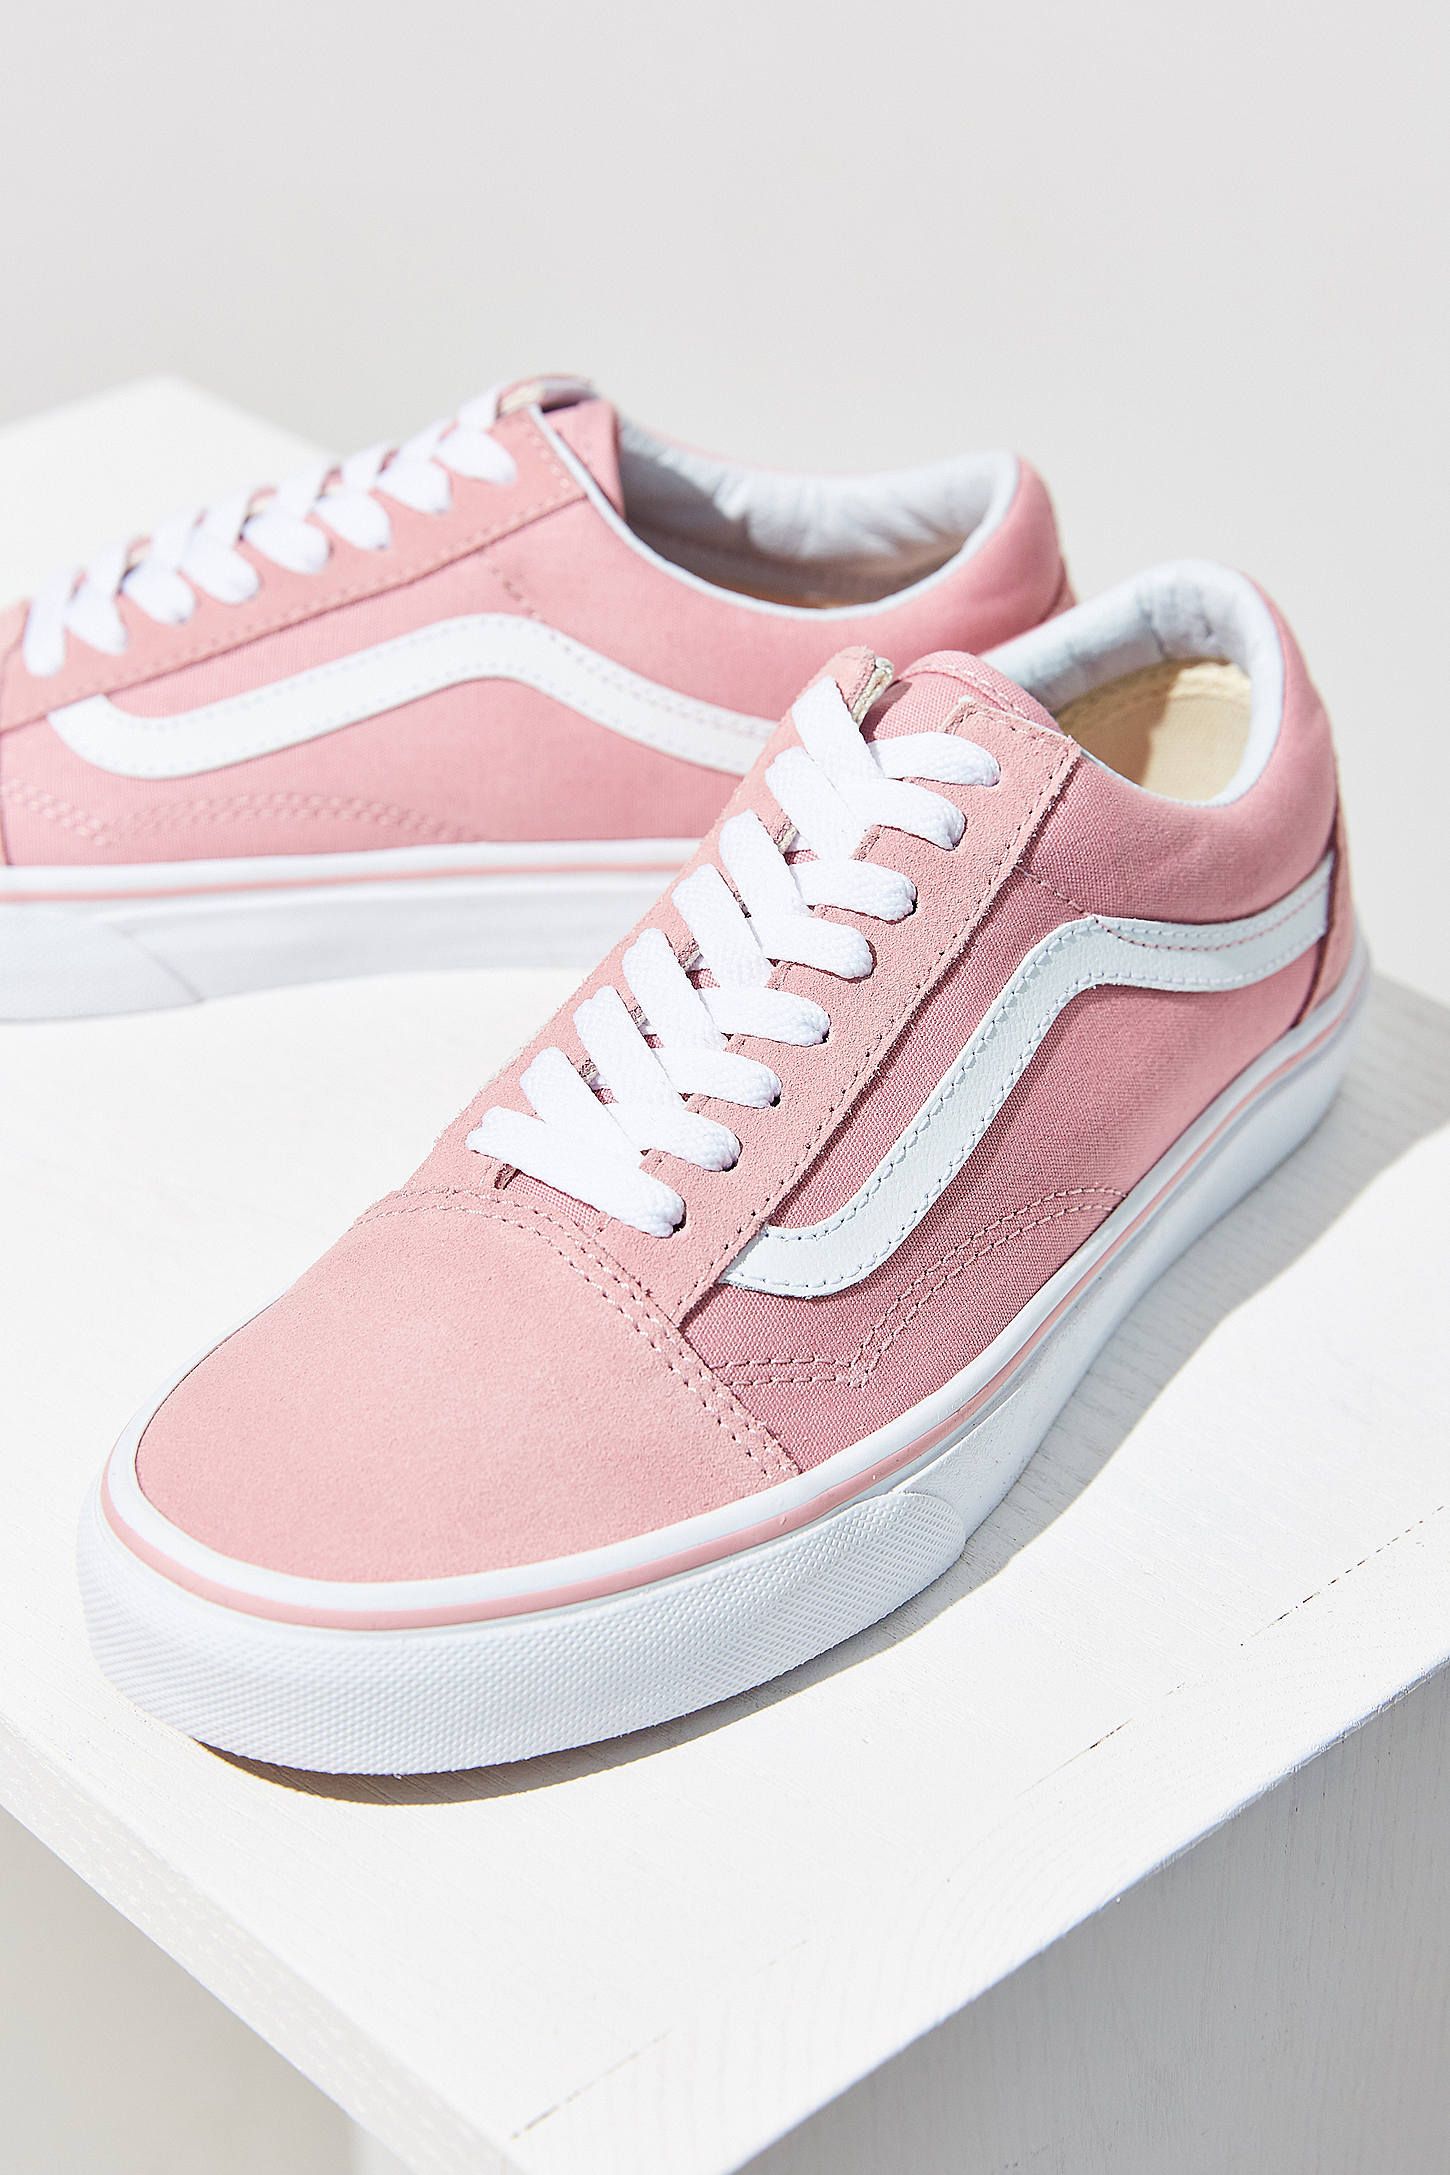 Vans Pink Old Skool Sneaker | Vans, Shop vans and Latest styles